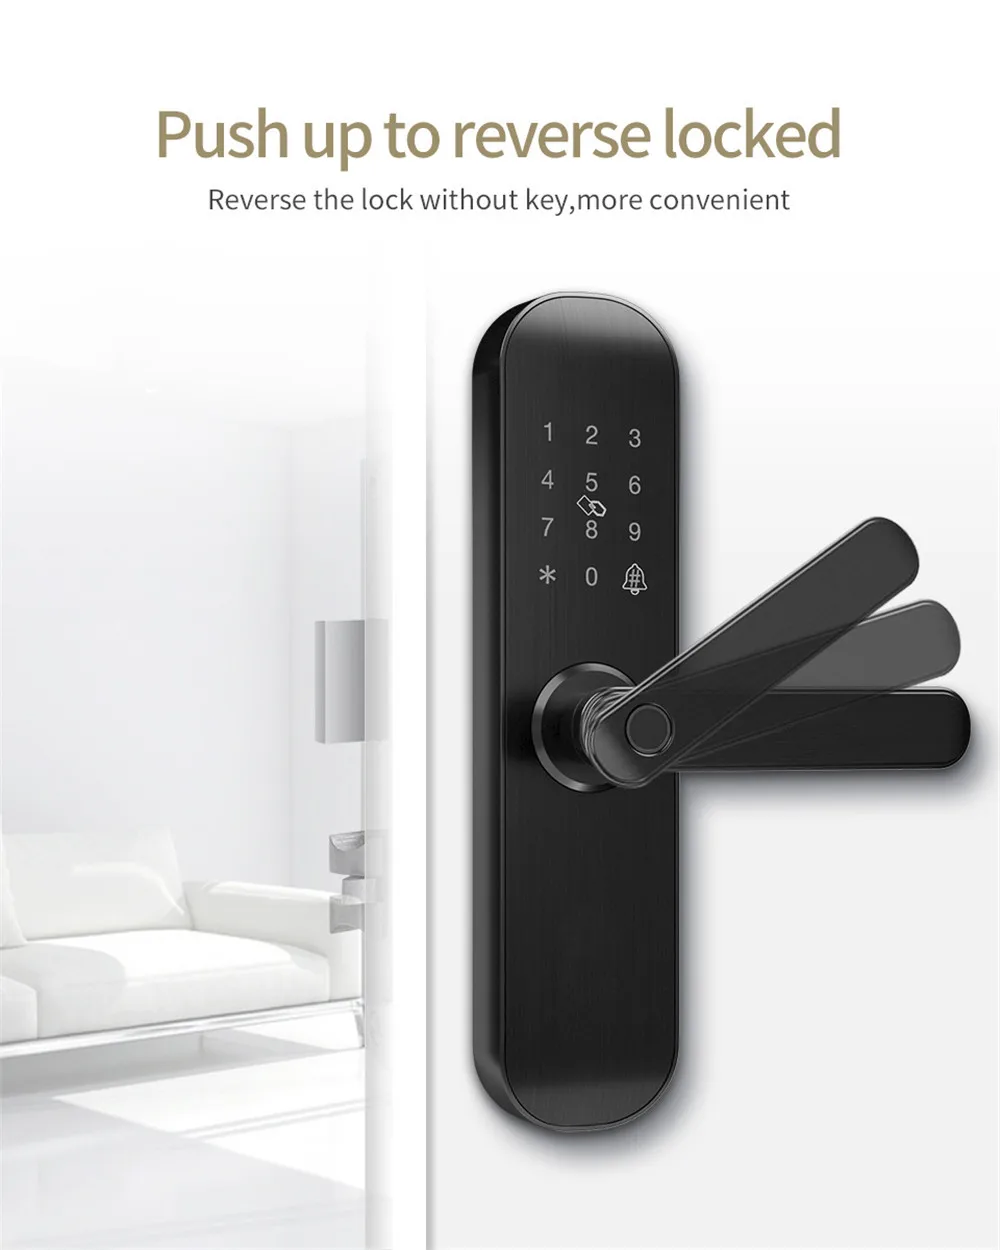 WiFi безопасности смарт замок с Биометрическим распознаванием приложение пароль устройство чтения RFID дверной замок электронный отель